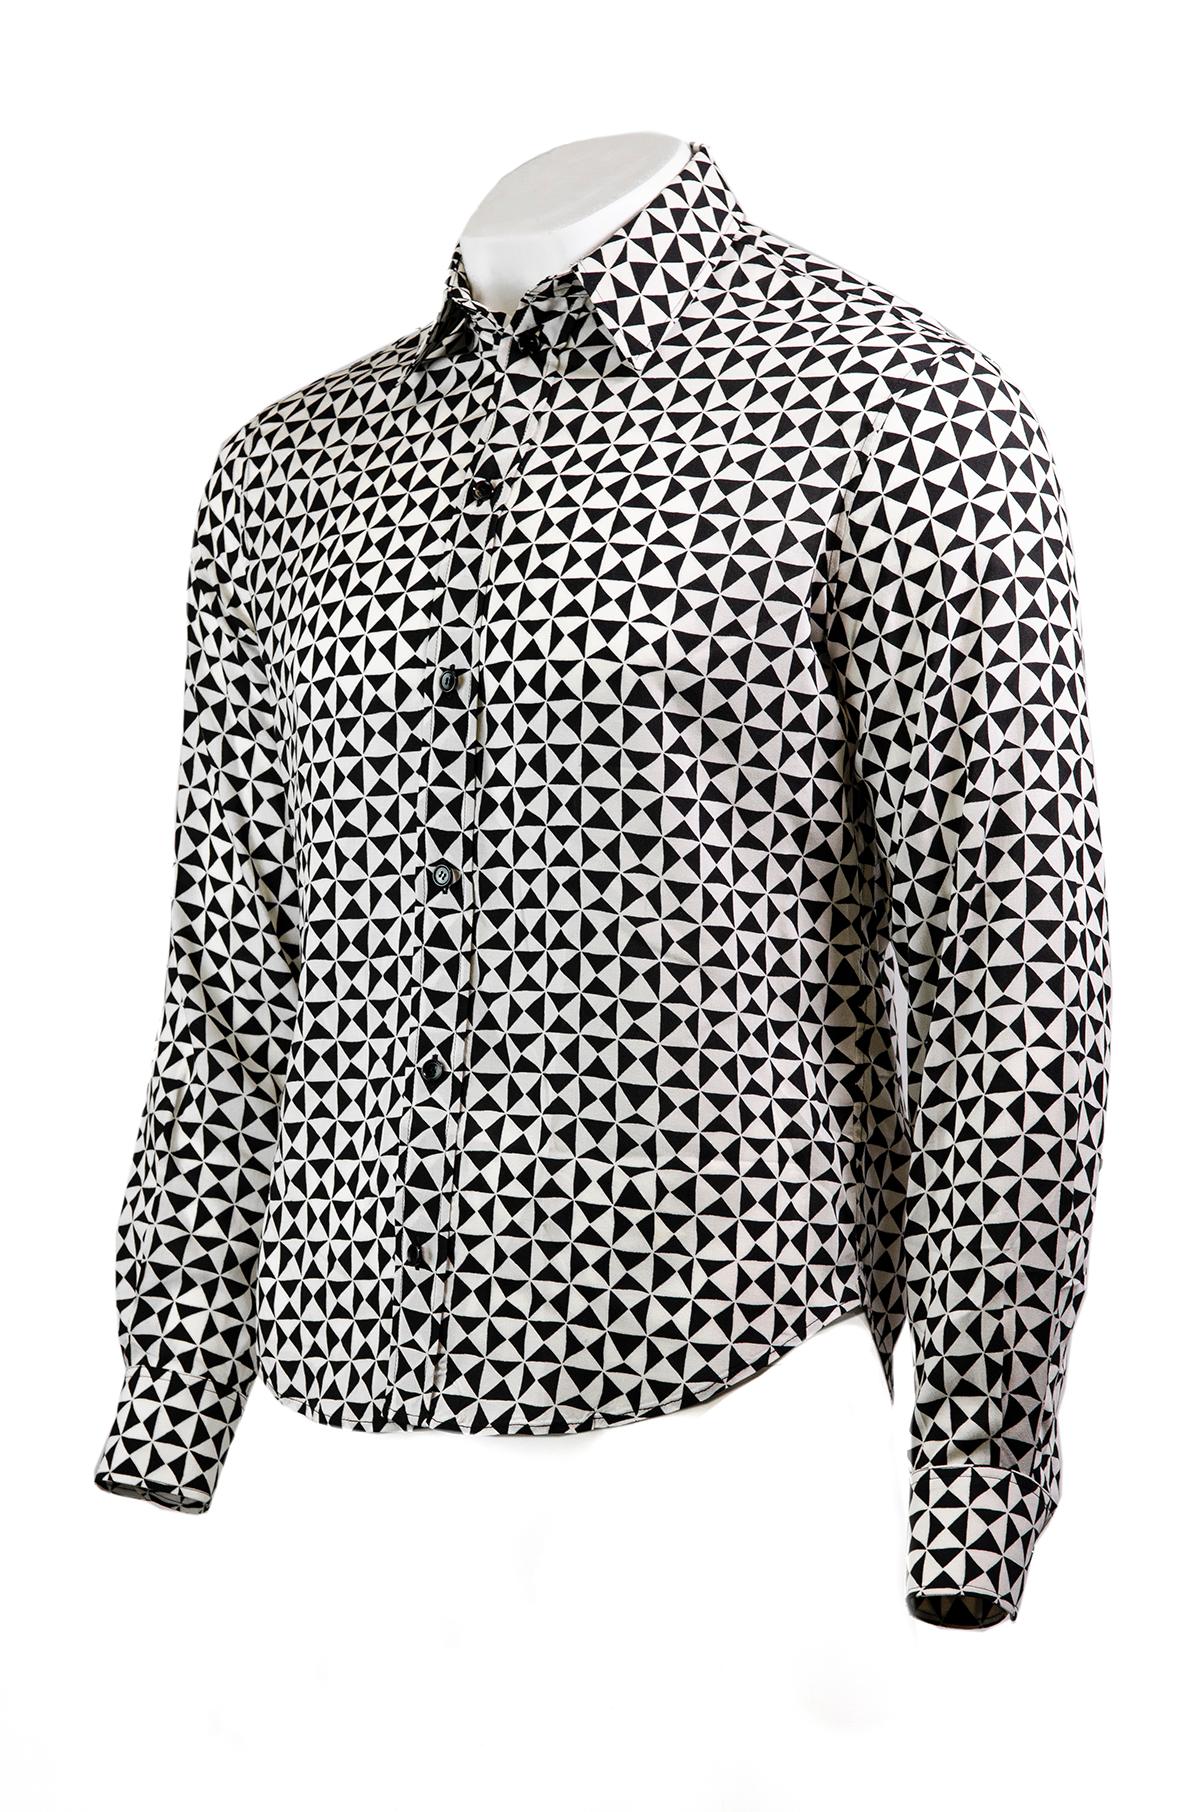 Chemise monochrome Celine by Heldi Slimane.

Cette chemise inspirée des années 70 est fabriquée en viscose douce et présente une coupe décontractée, un motif triangle noir et blanc, une encolure à col, des manches longues à revers et une fermeture à